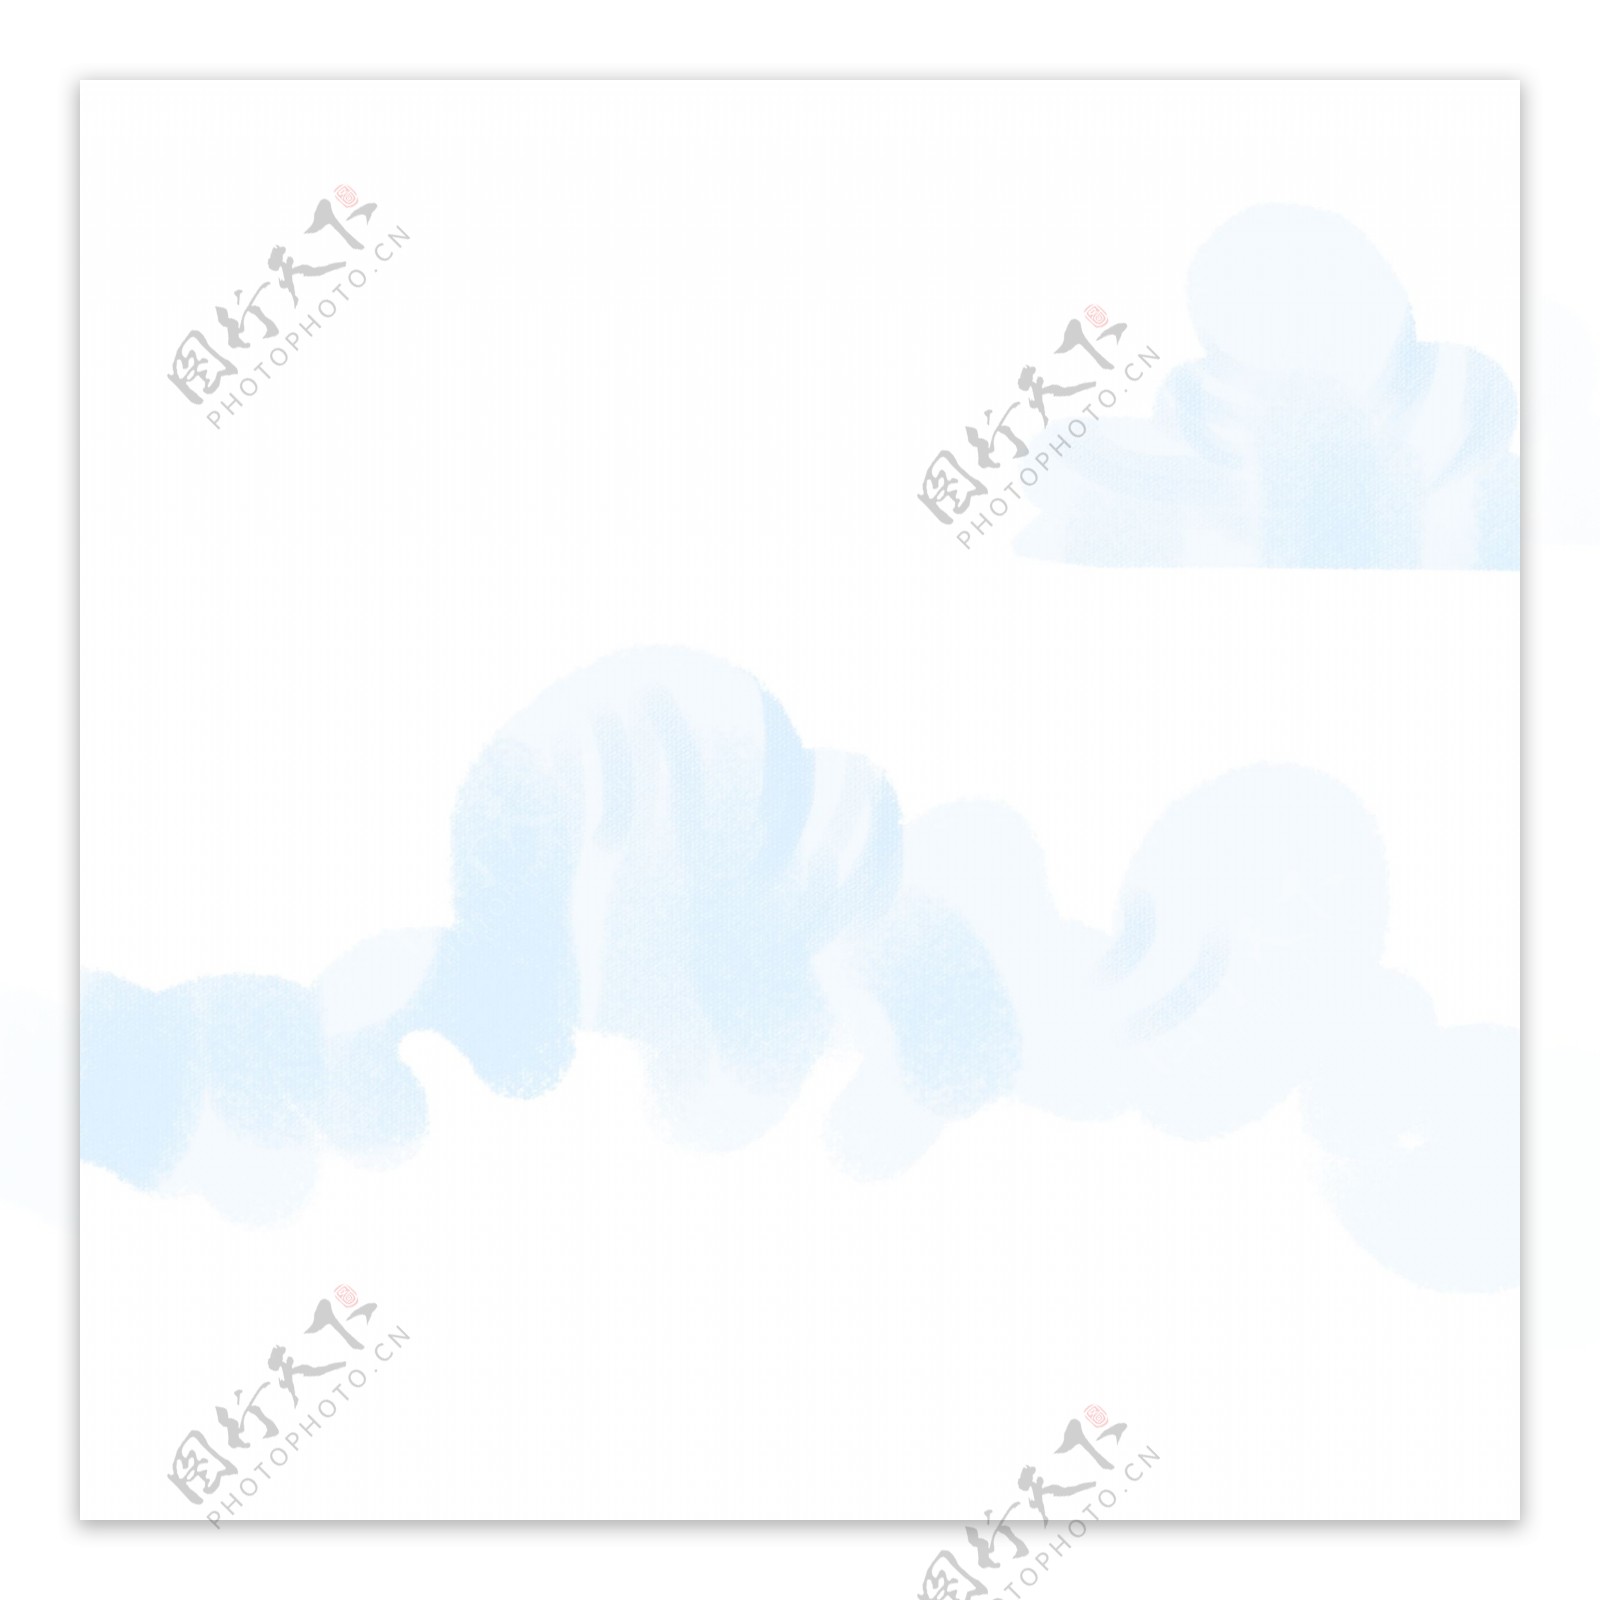 白色创意漂浮的云朵元素